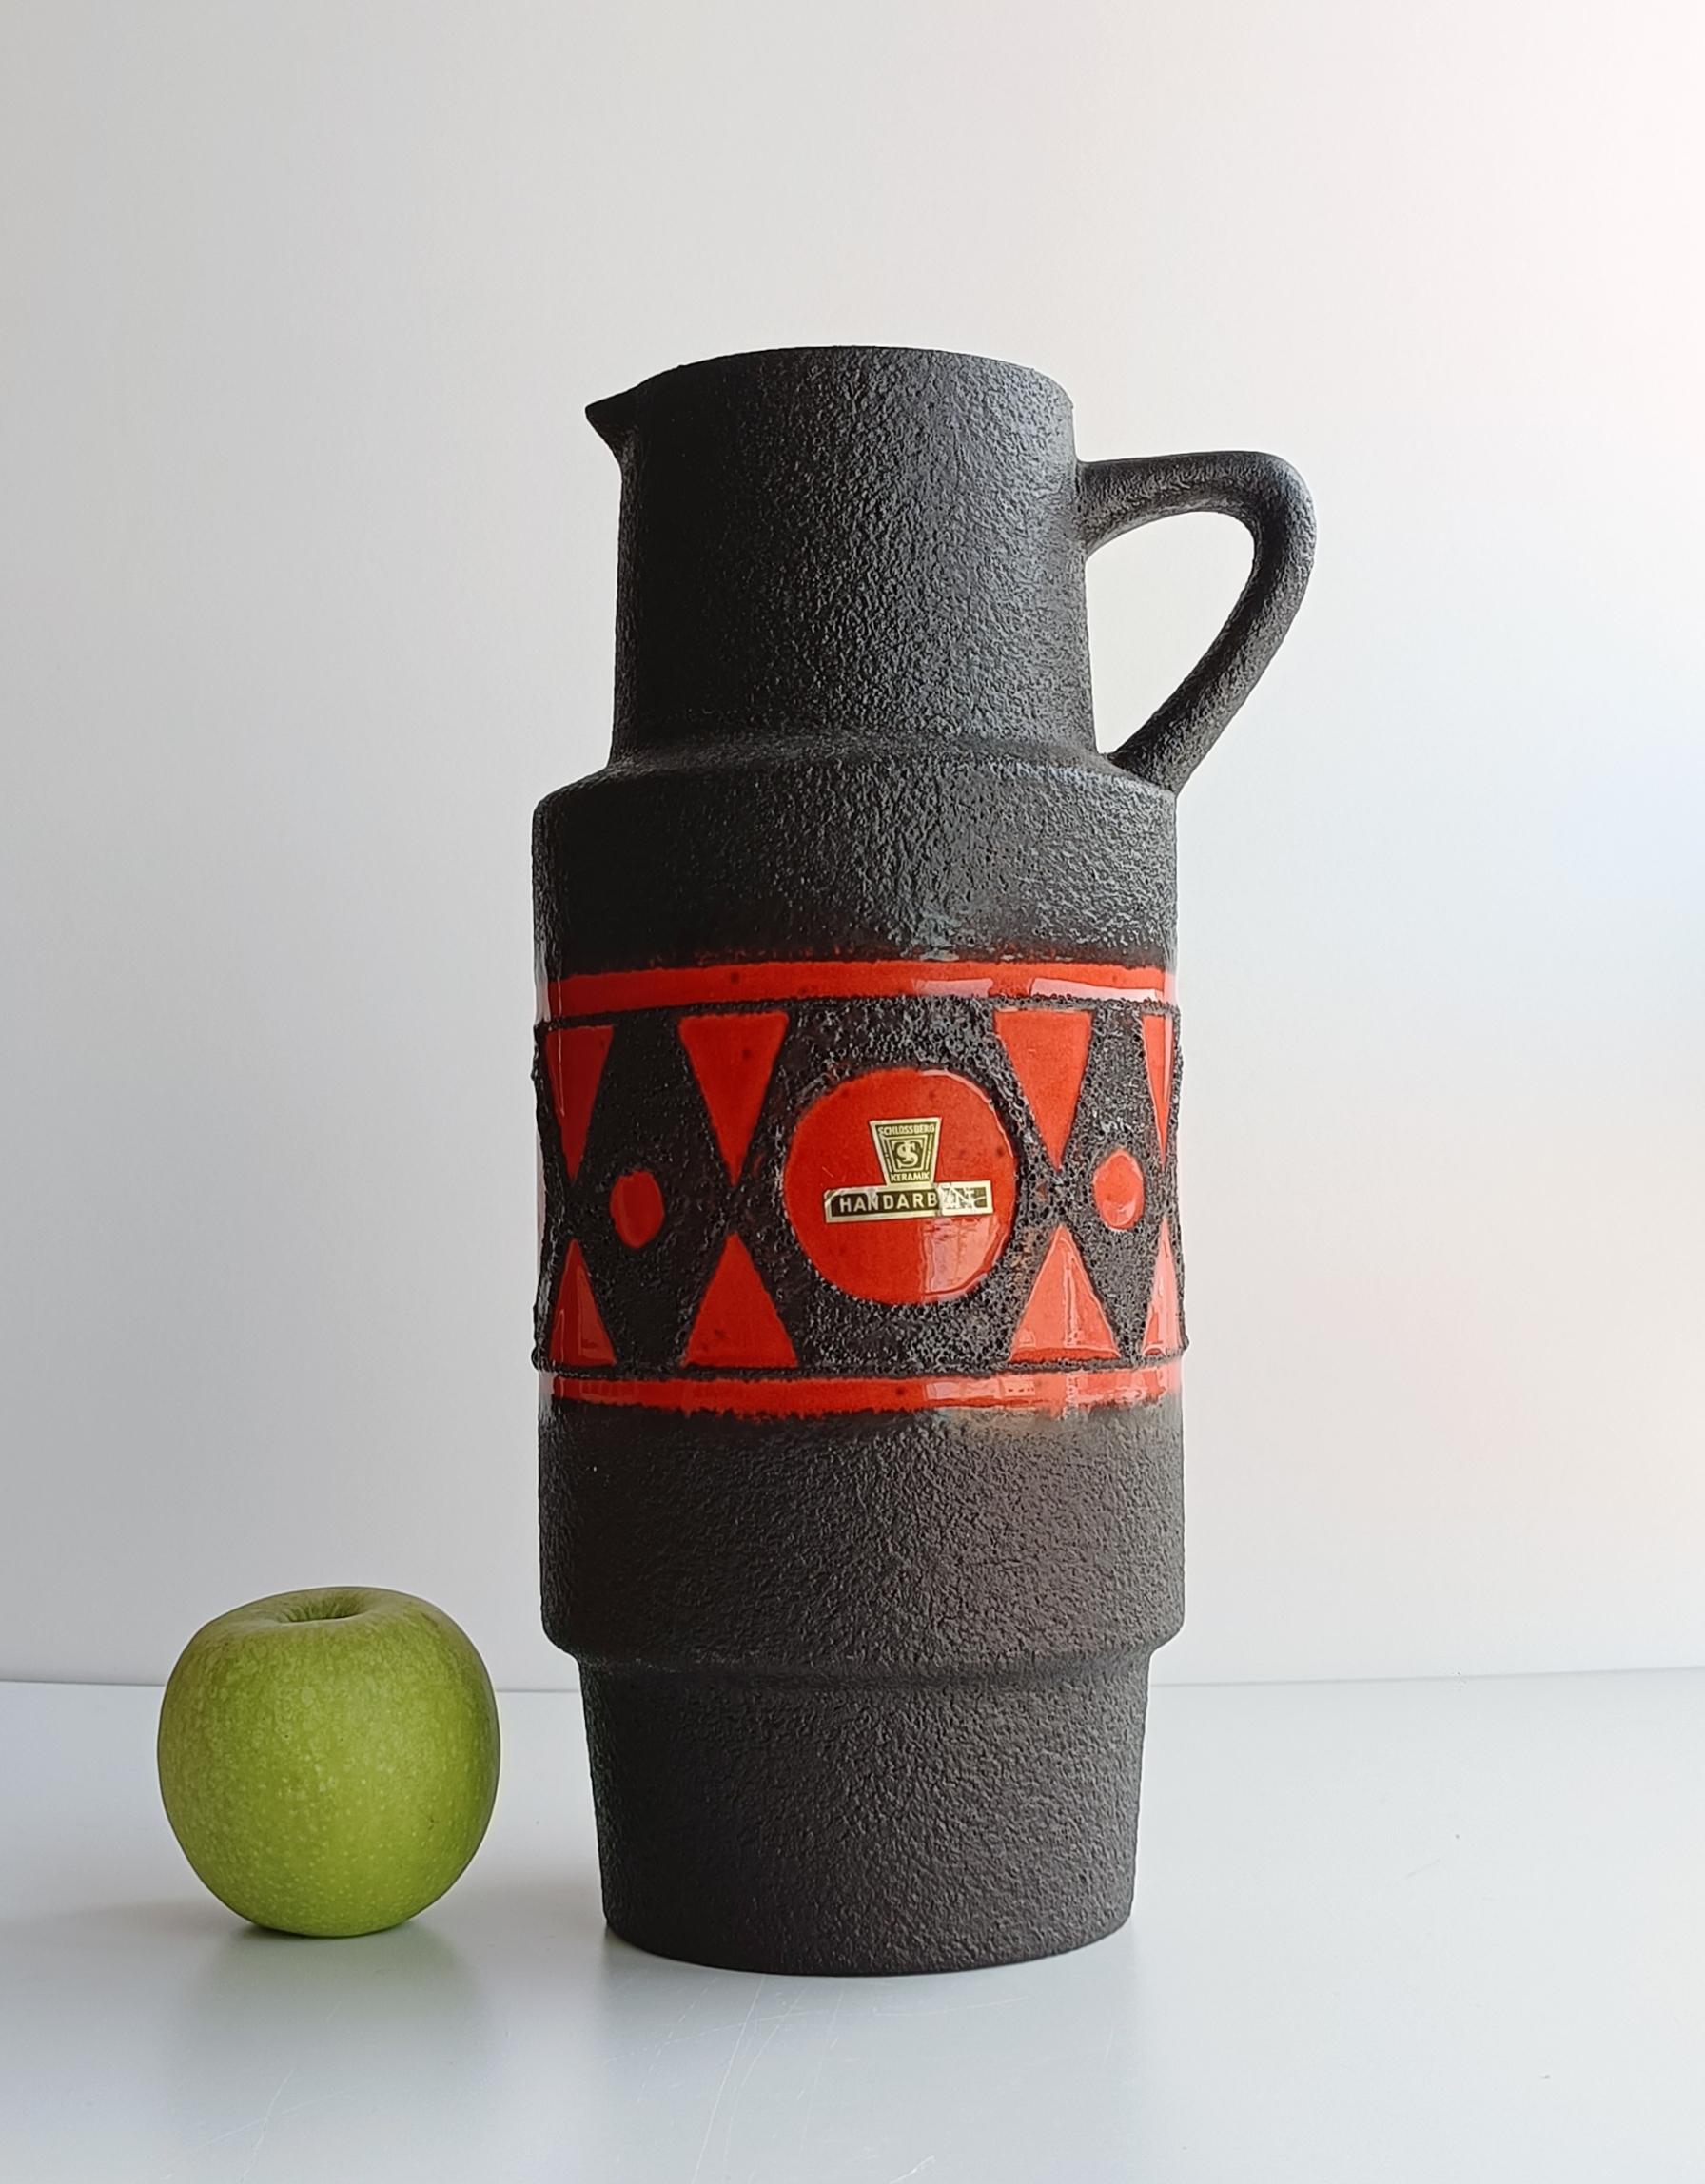 Questo vaso Schlossberg, form A 279-35, è un notevole esempio di ceramica della Germania occidentale degli anni '70. Questi pezzi si caratterizzavano per le forme audaci, i colori vivaci e gli smalti espressivi, spesso caratterizzati da colature e